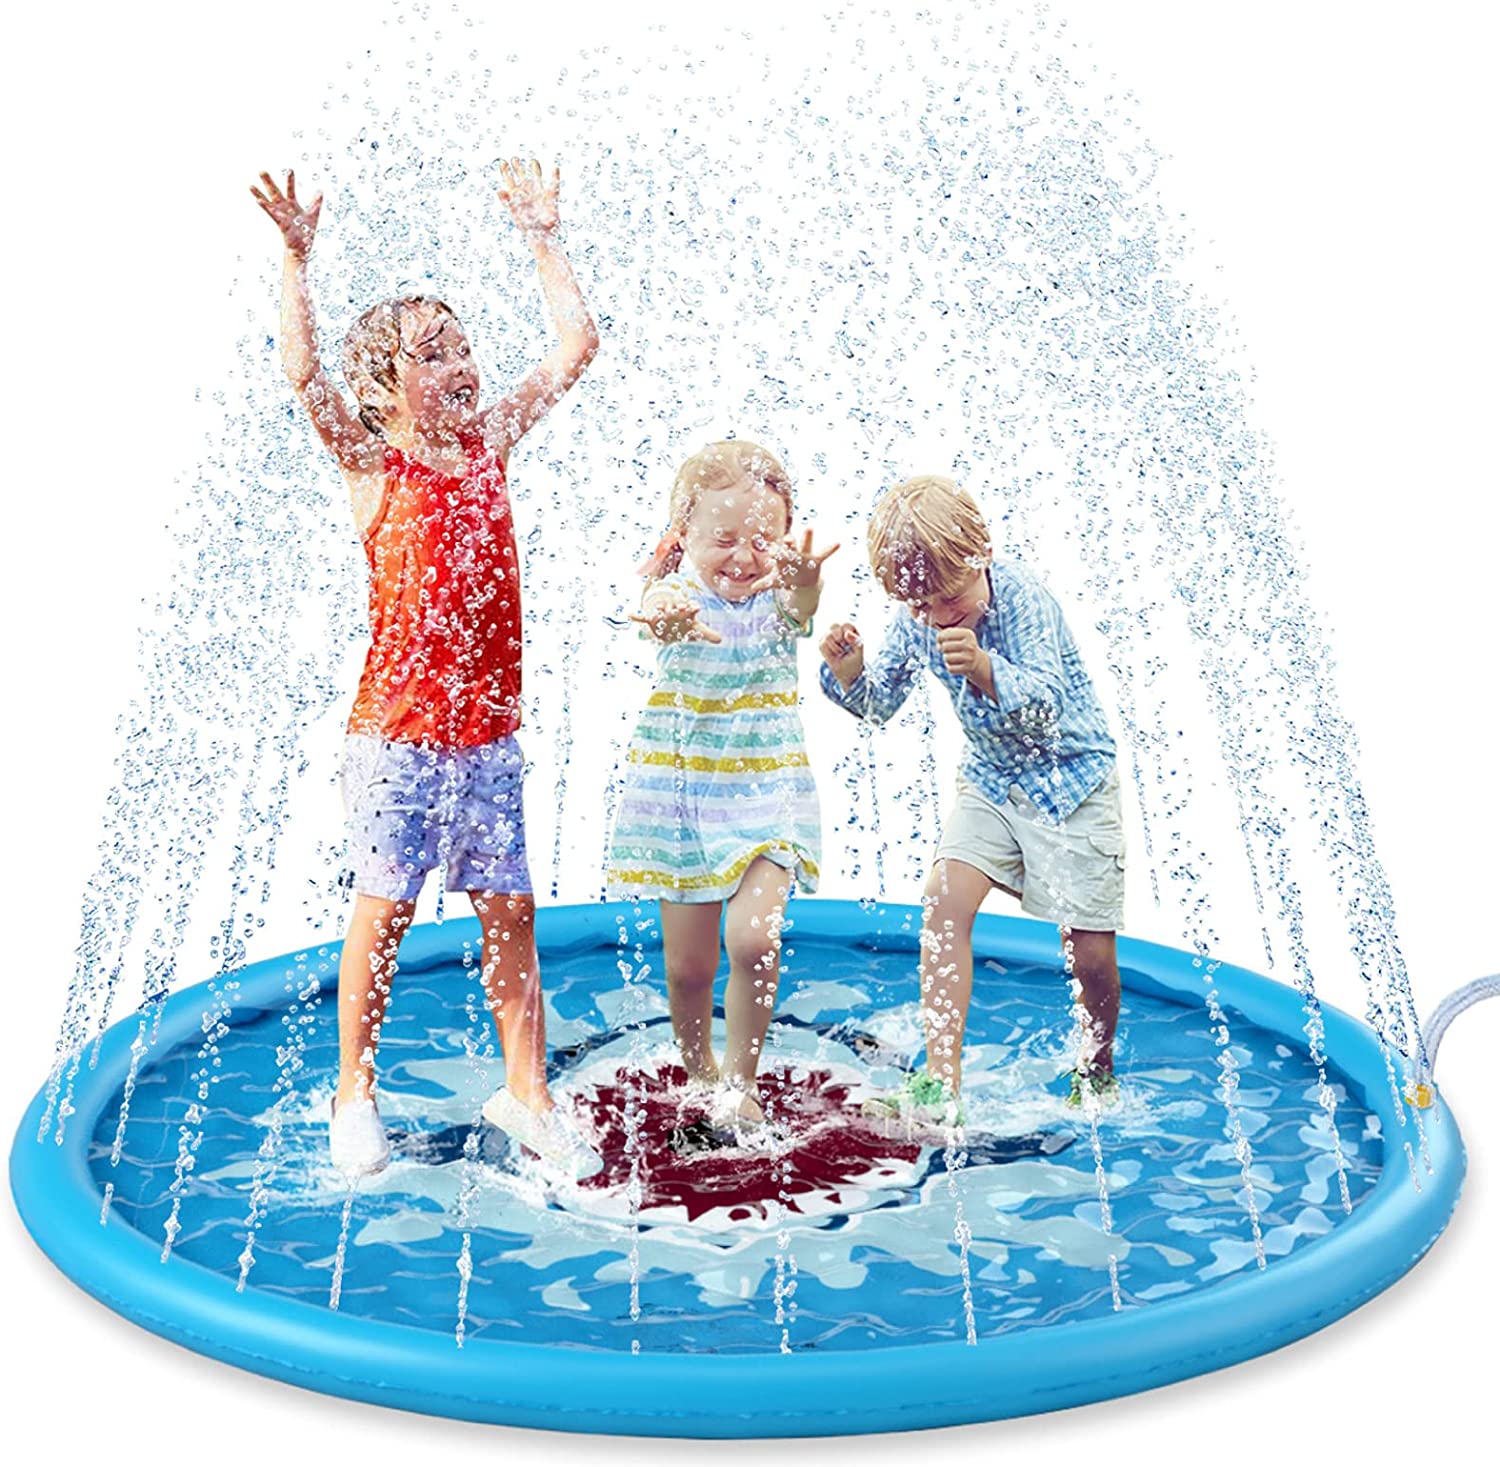 Inflatable Splash Pool Pad